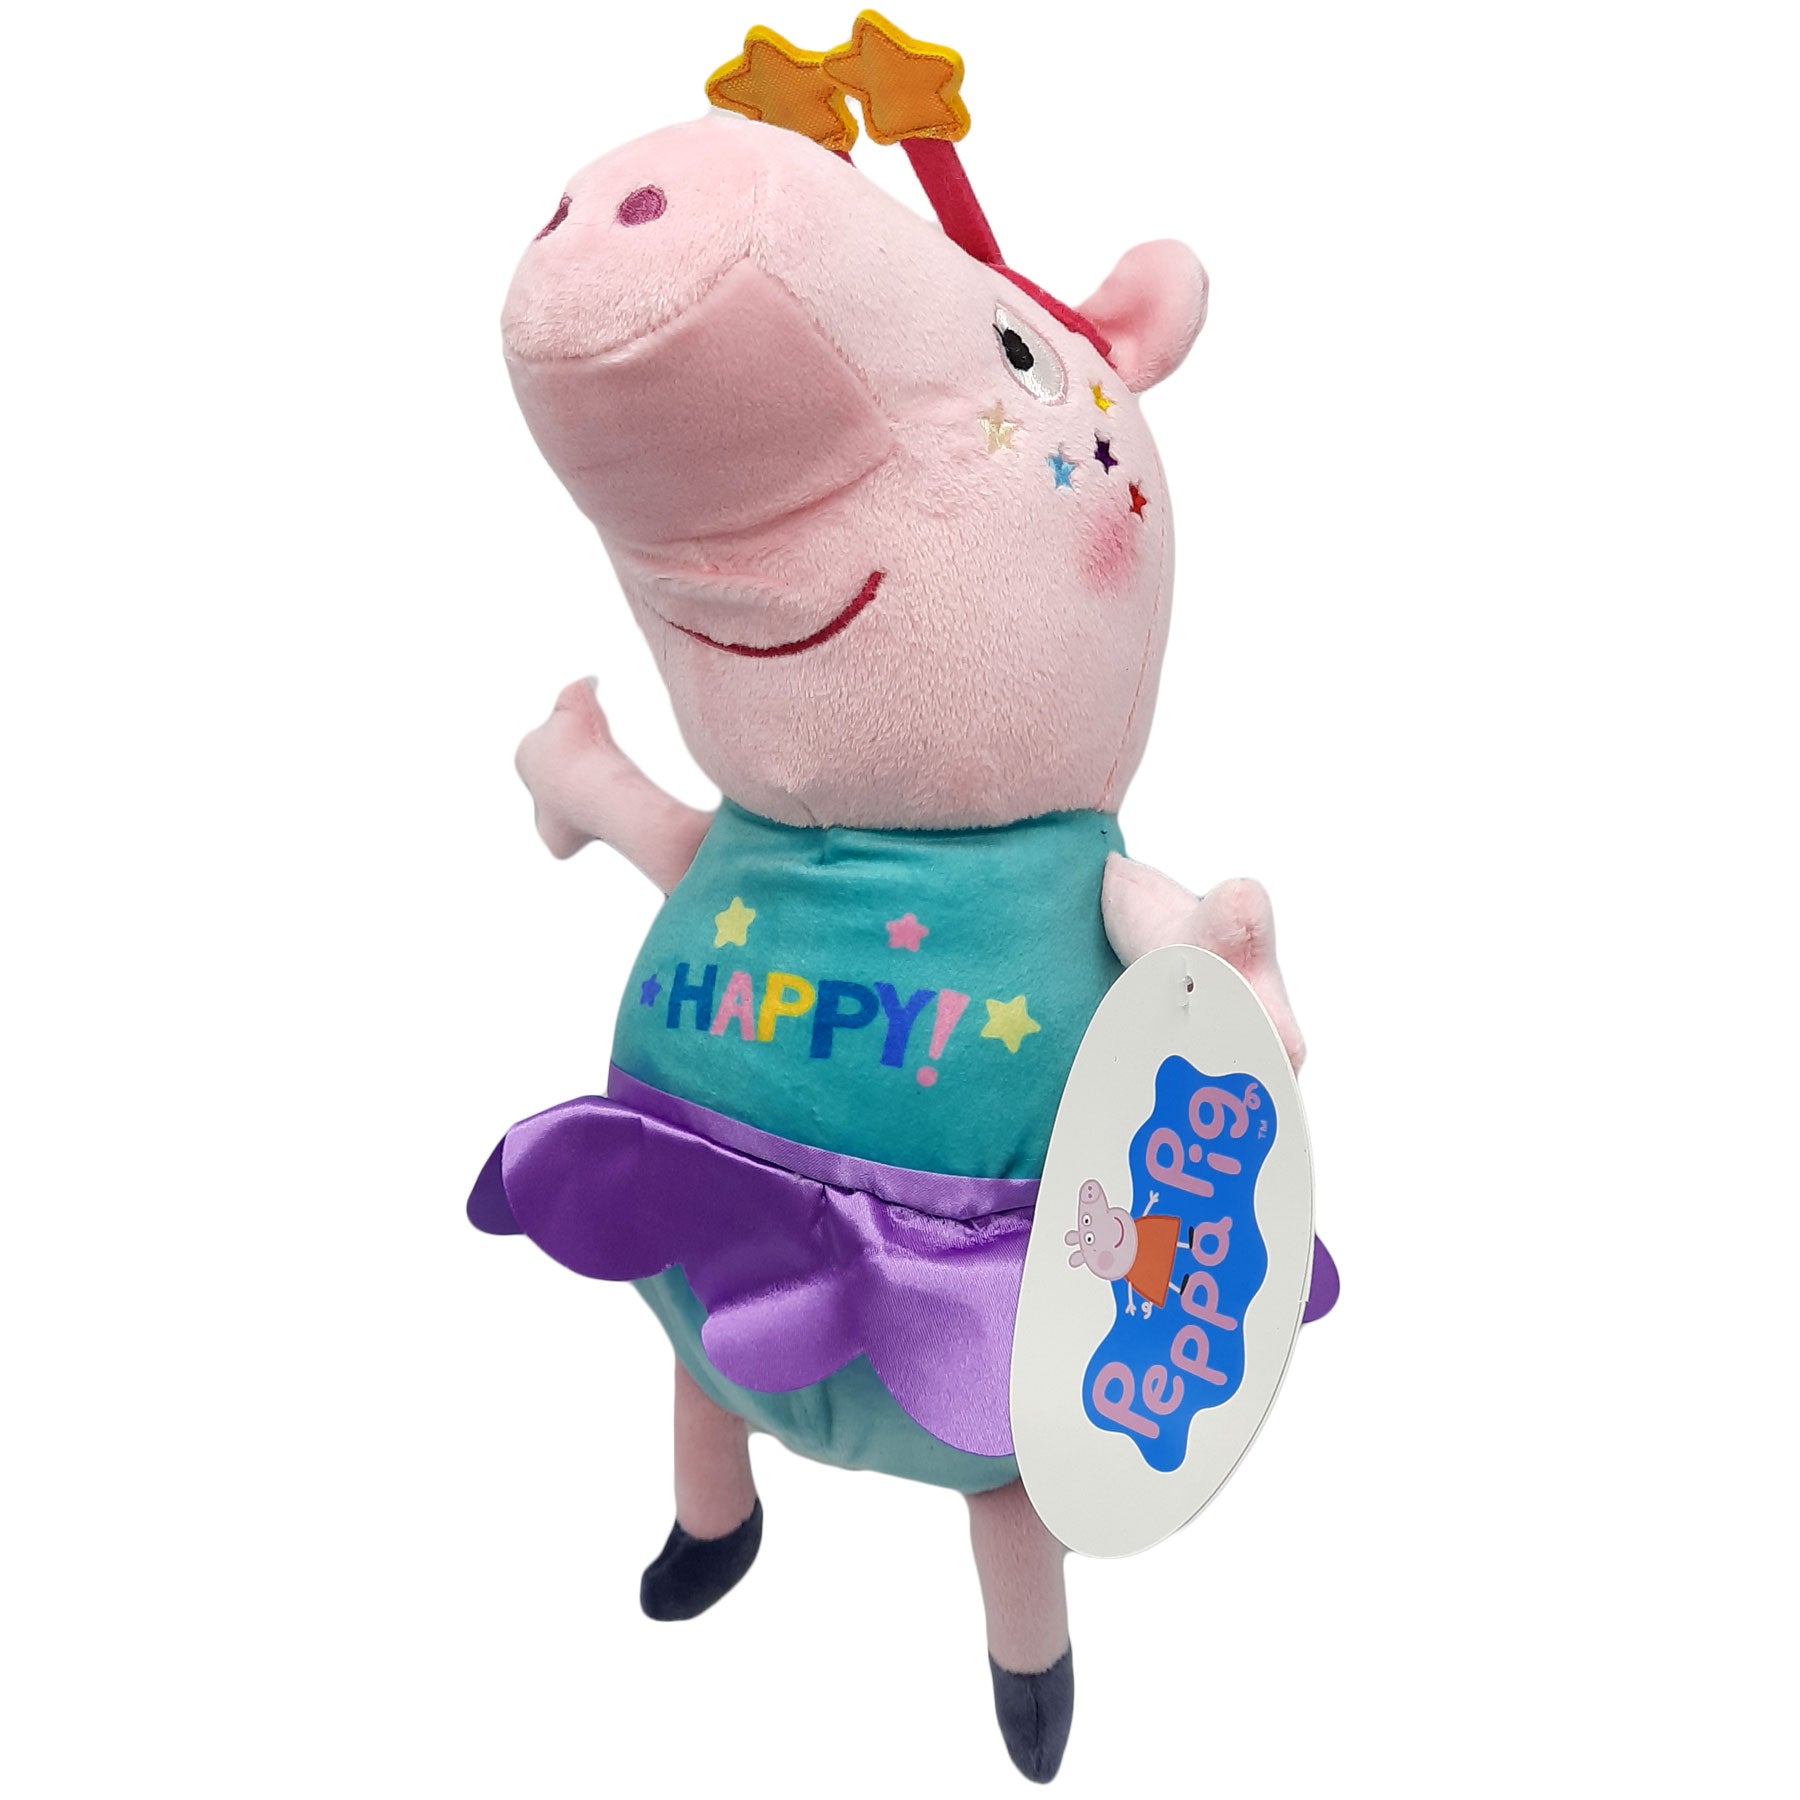 Charles Keasing filosofie Ananiver Peppa Pig Happy Knuffel (31 cm) | Toytraders.nl